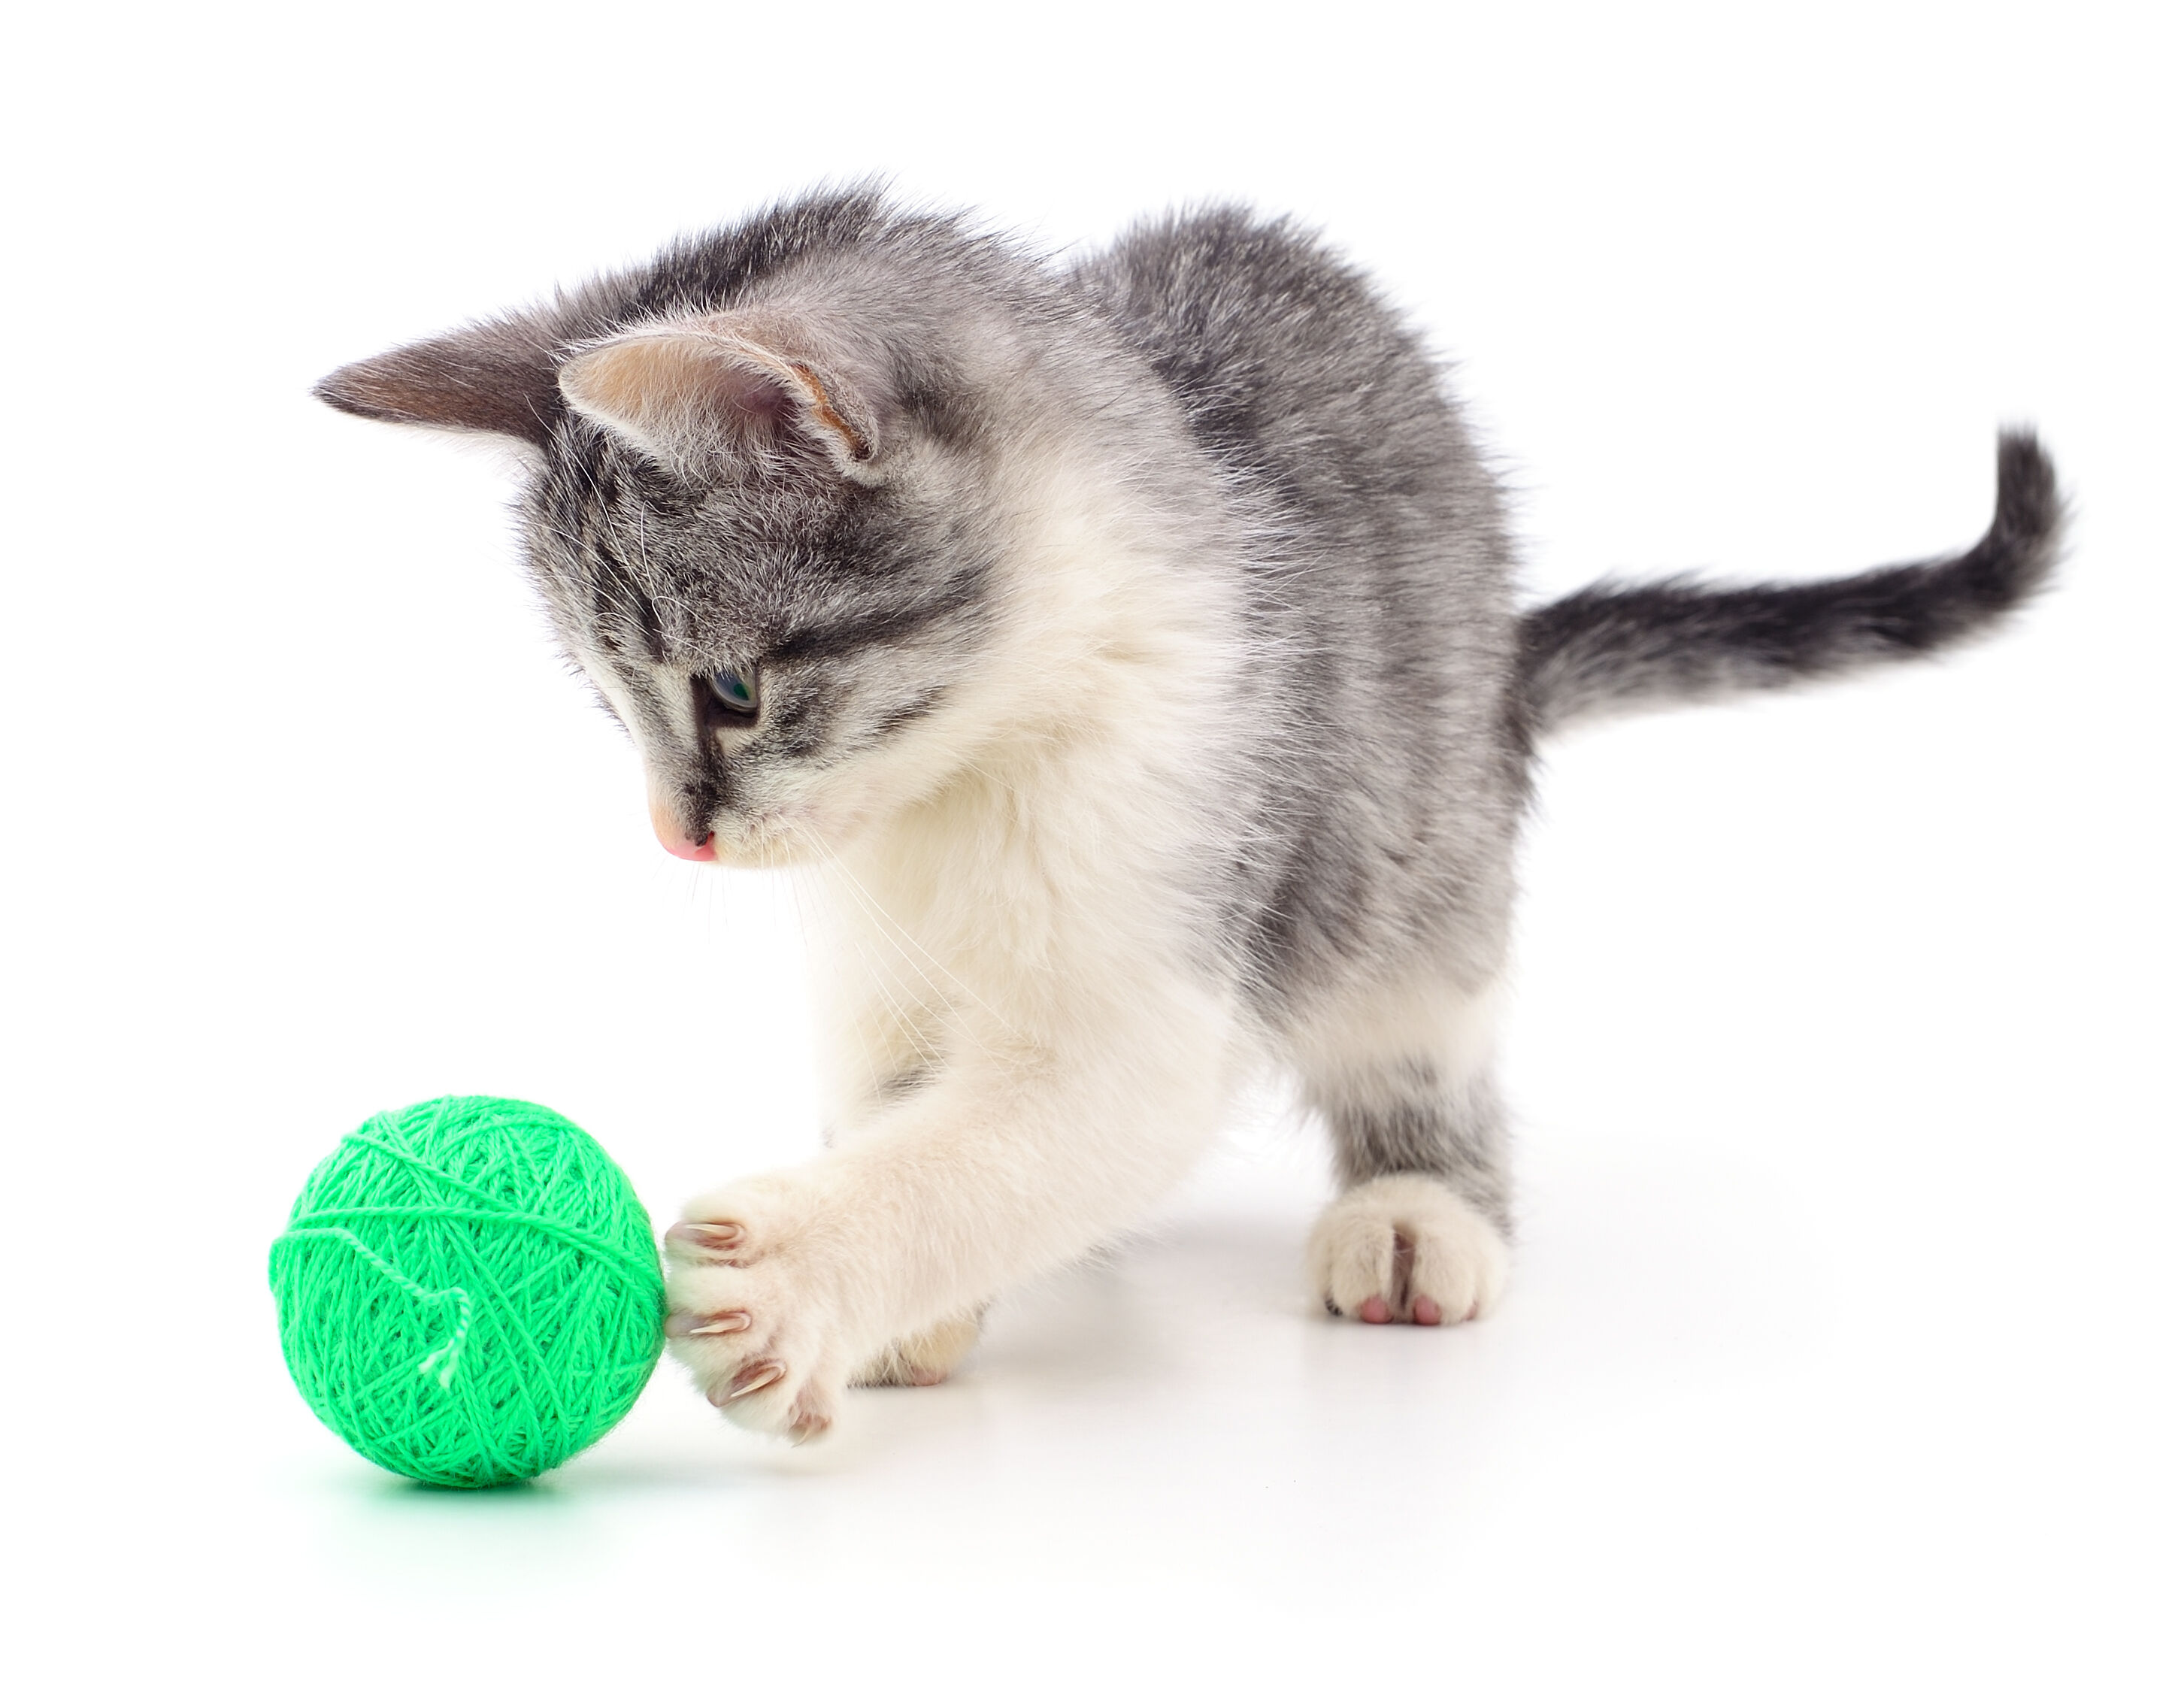 Babykatze spielt mit kleinem grünem Ball